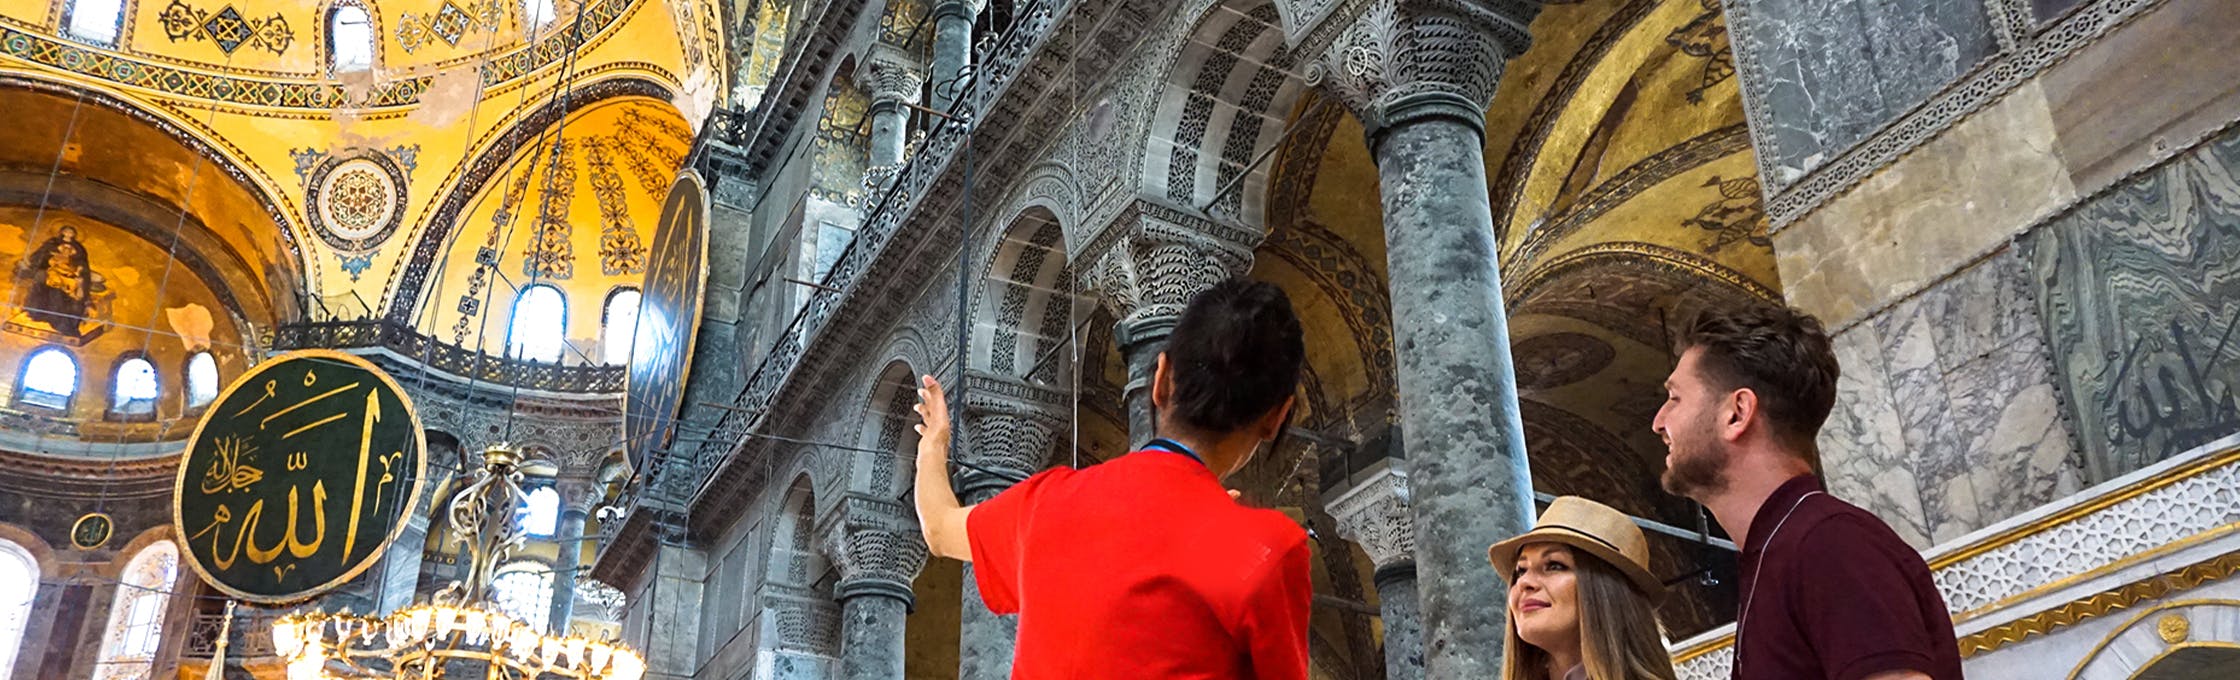 Hagia Sophia Altstadttour mit optionalem Zugang zum Besucherbereich